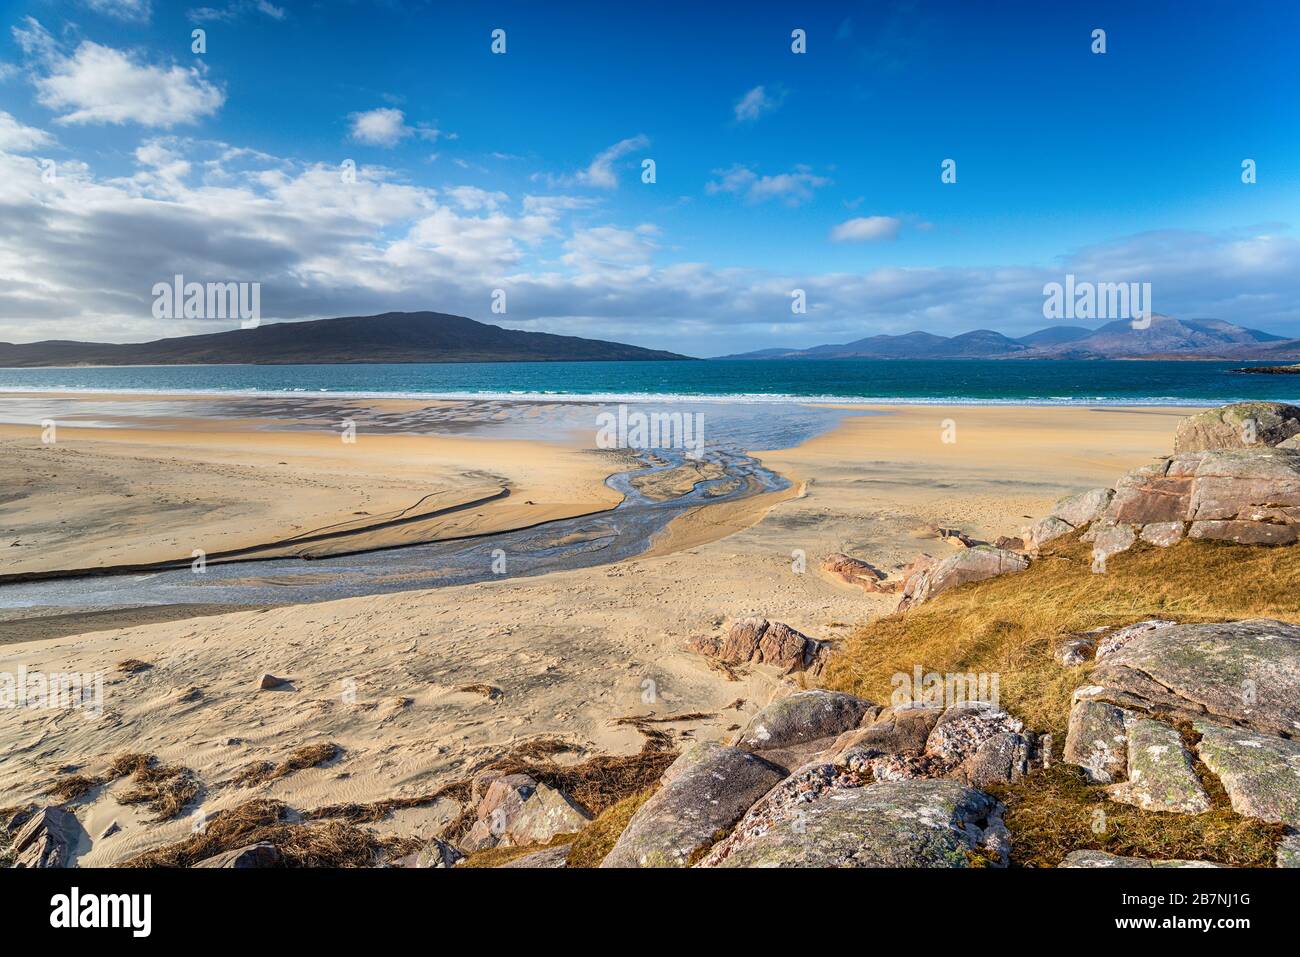 La bellissima spiaggia di sabbia di Traigh Rosamol a Luakentire sull'isola di Harris in Scozia Foto Stock